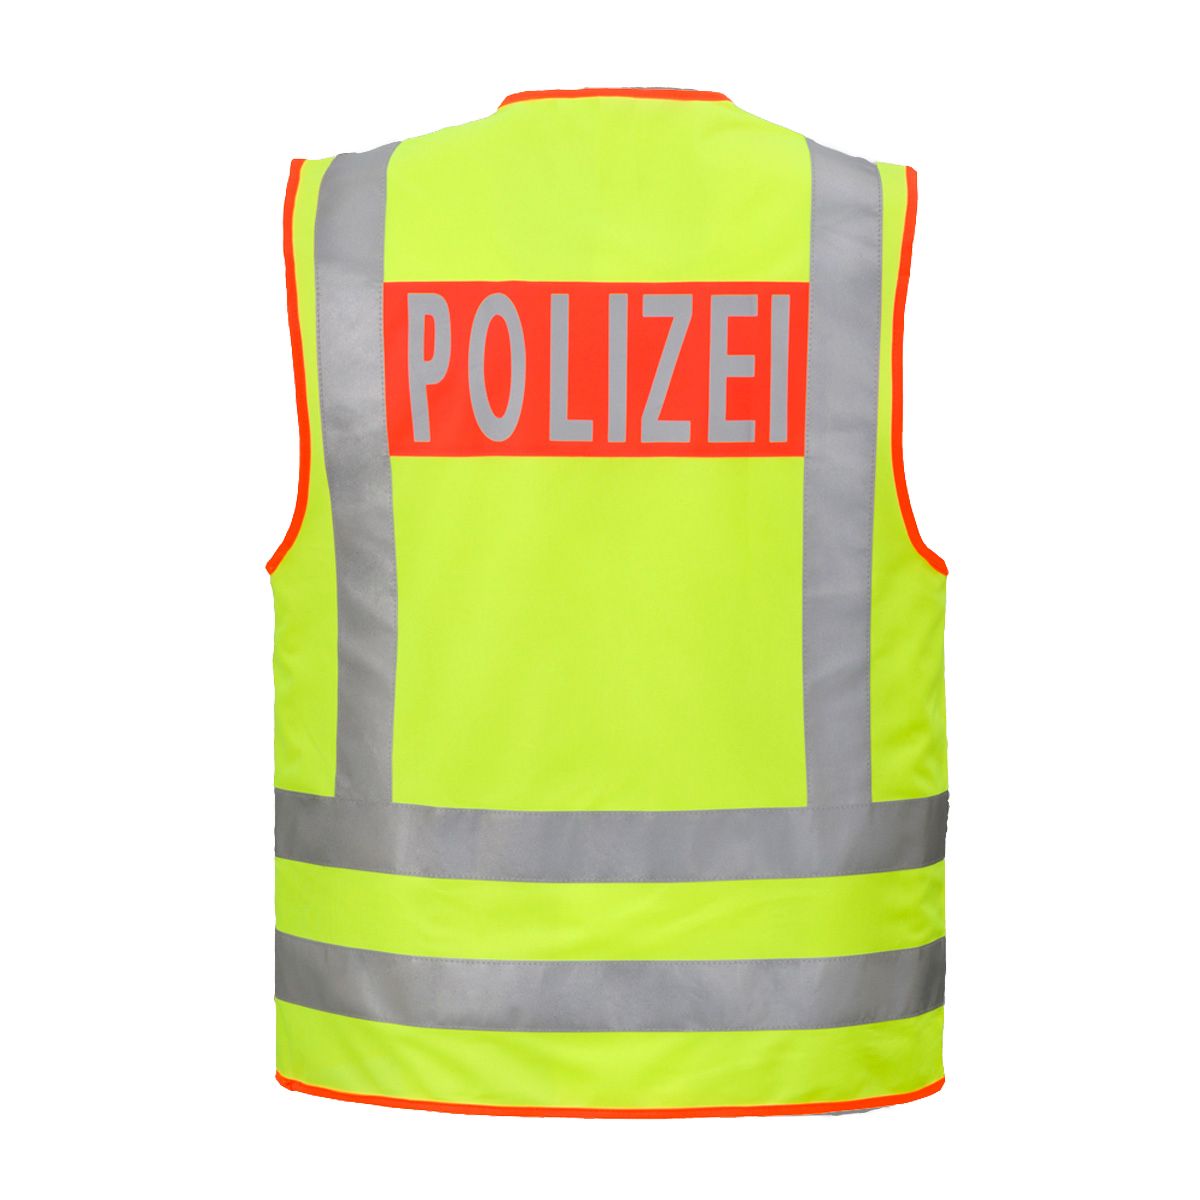 BEHÖRNDENWARNWESTE POLIZEI / SECURITY EN ISO 20471 - Warnwesten & Zubehör -  Helpi-Shop - Der Feuerwehrshop